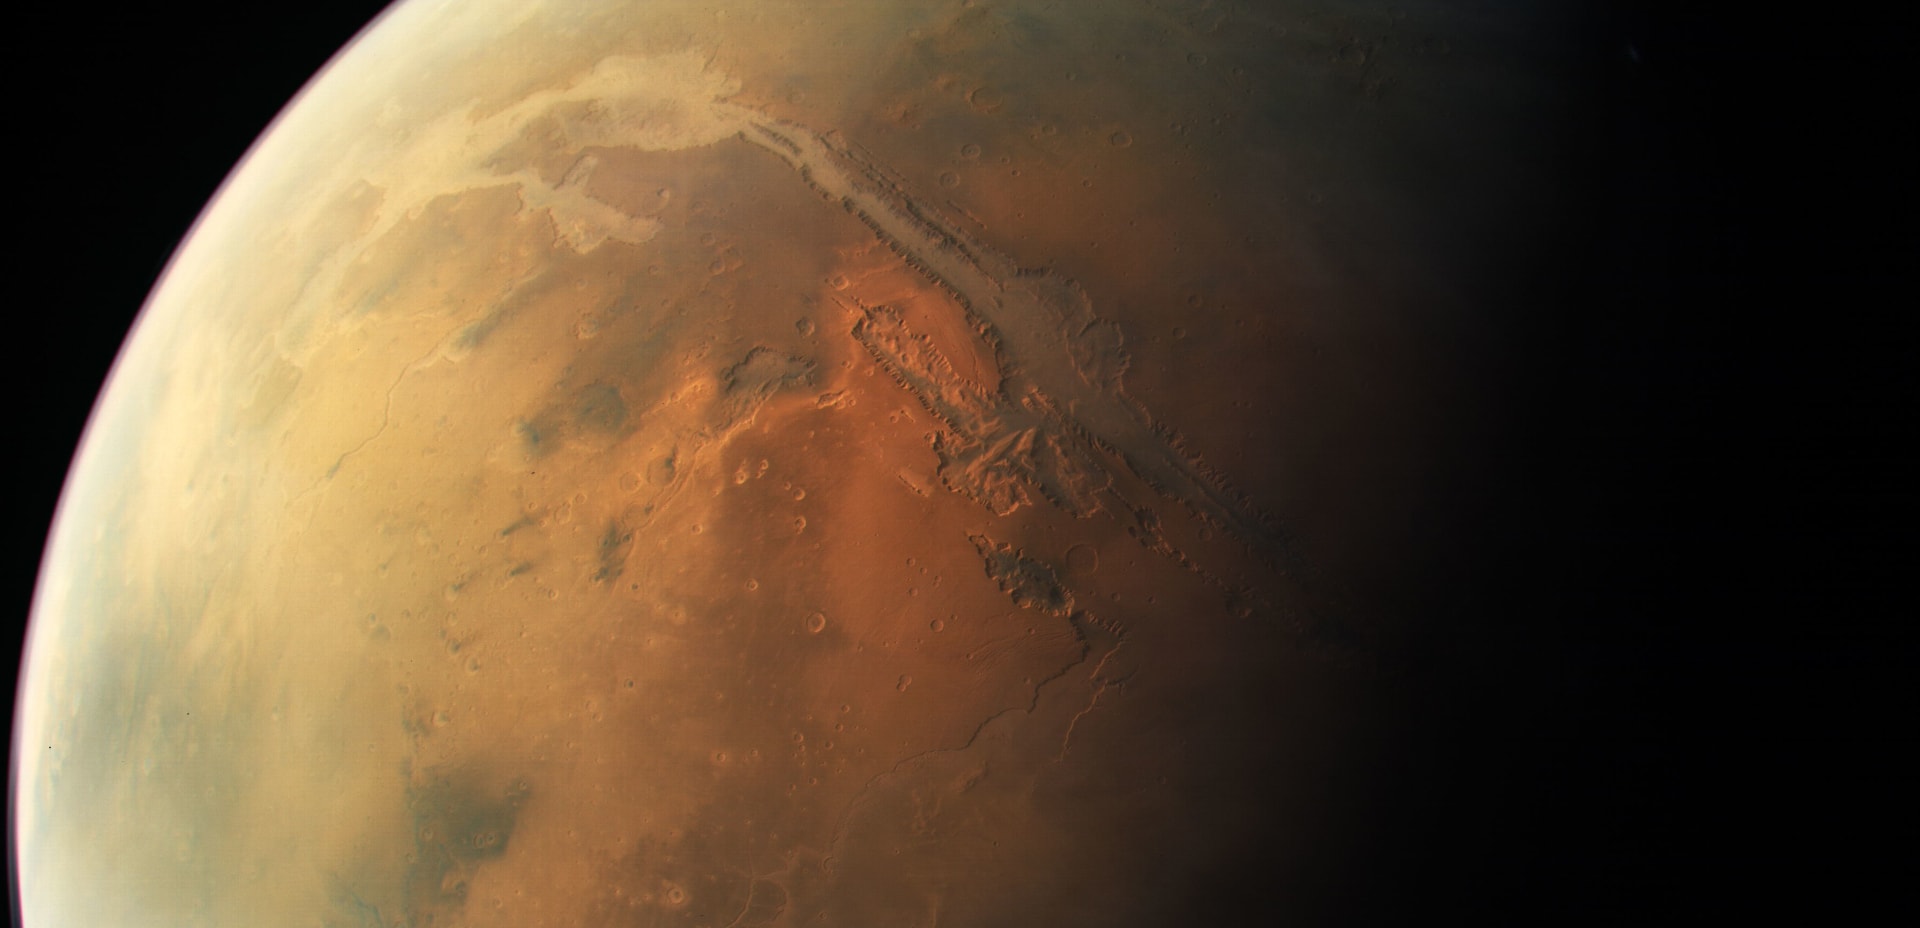 رسم خرائط لكوكب المريخ.. كيف سيمكننا ذلك من العيش على الكوكب الأحمر؟